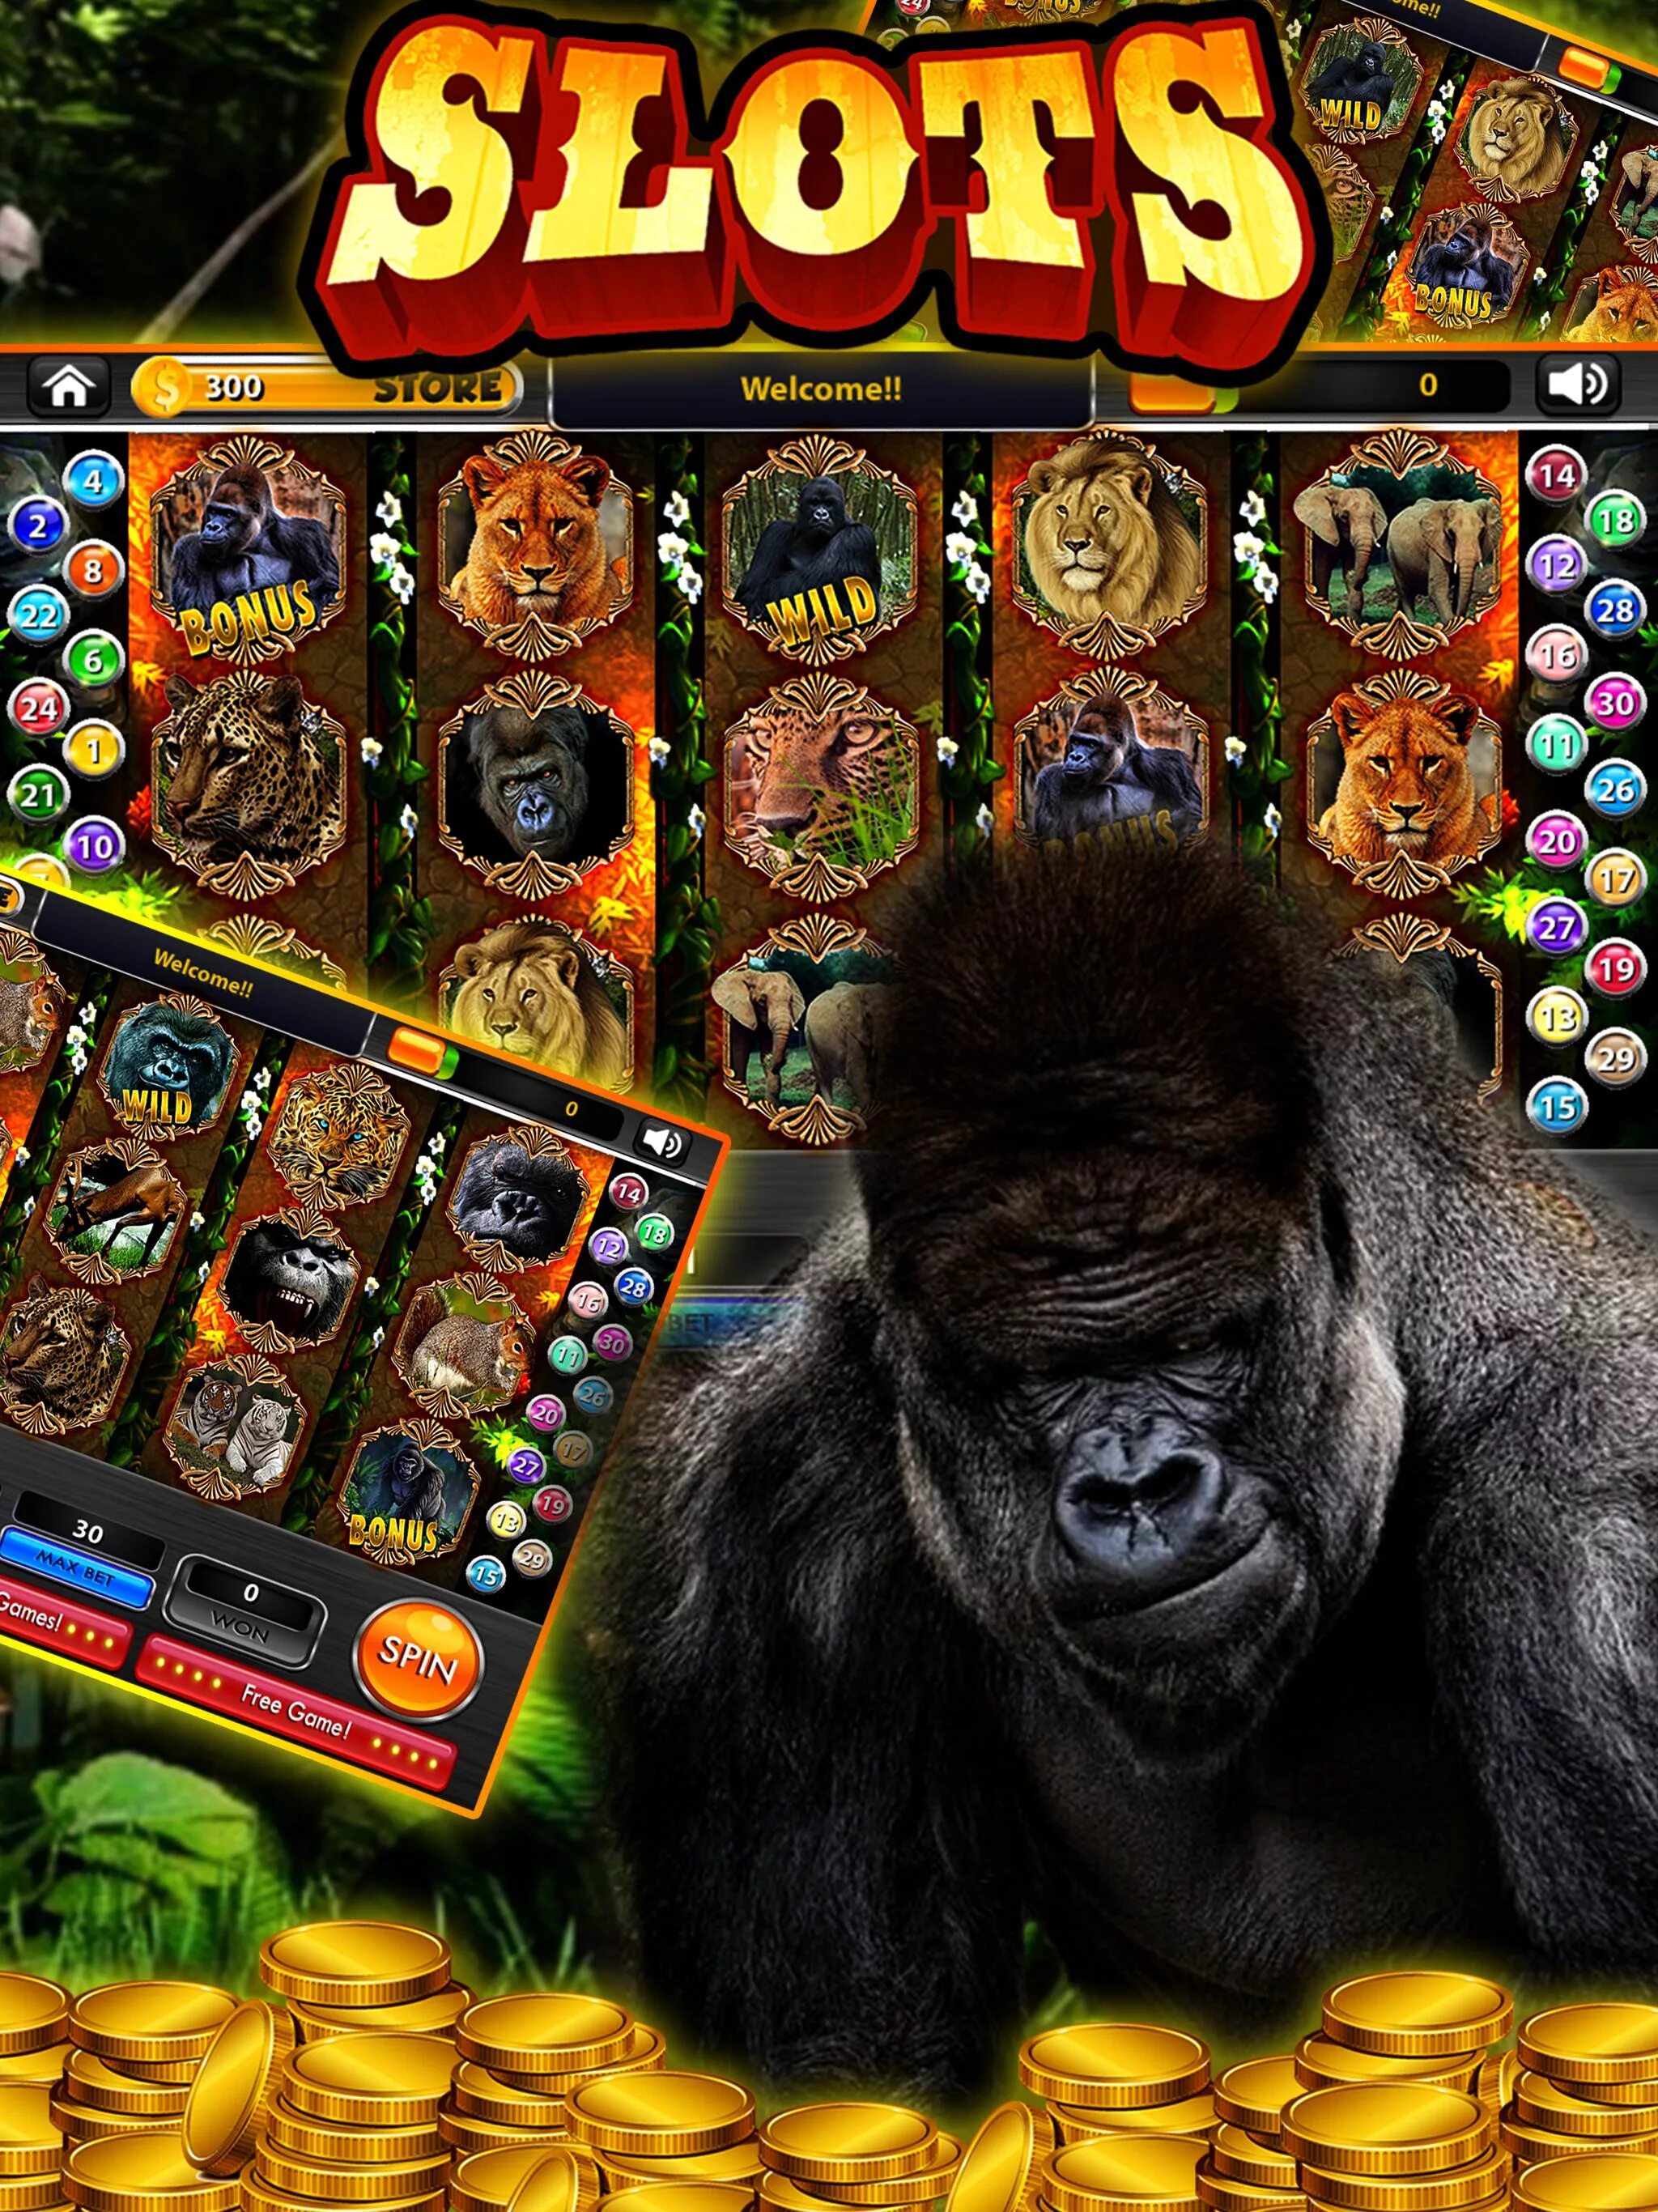 Горилла casino gorilla vad1. Слот с гориллой. Игровой автомат Gorilla. Слот казино с гориллой. Jungle Gorilla слот игровые автоматы.